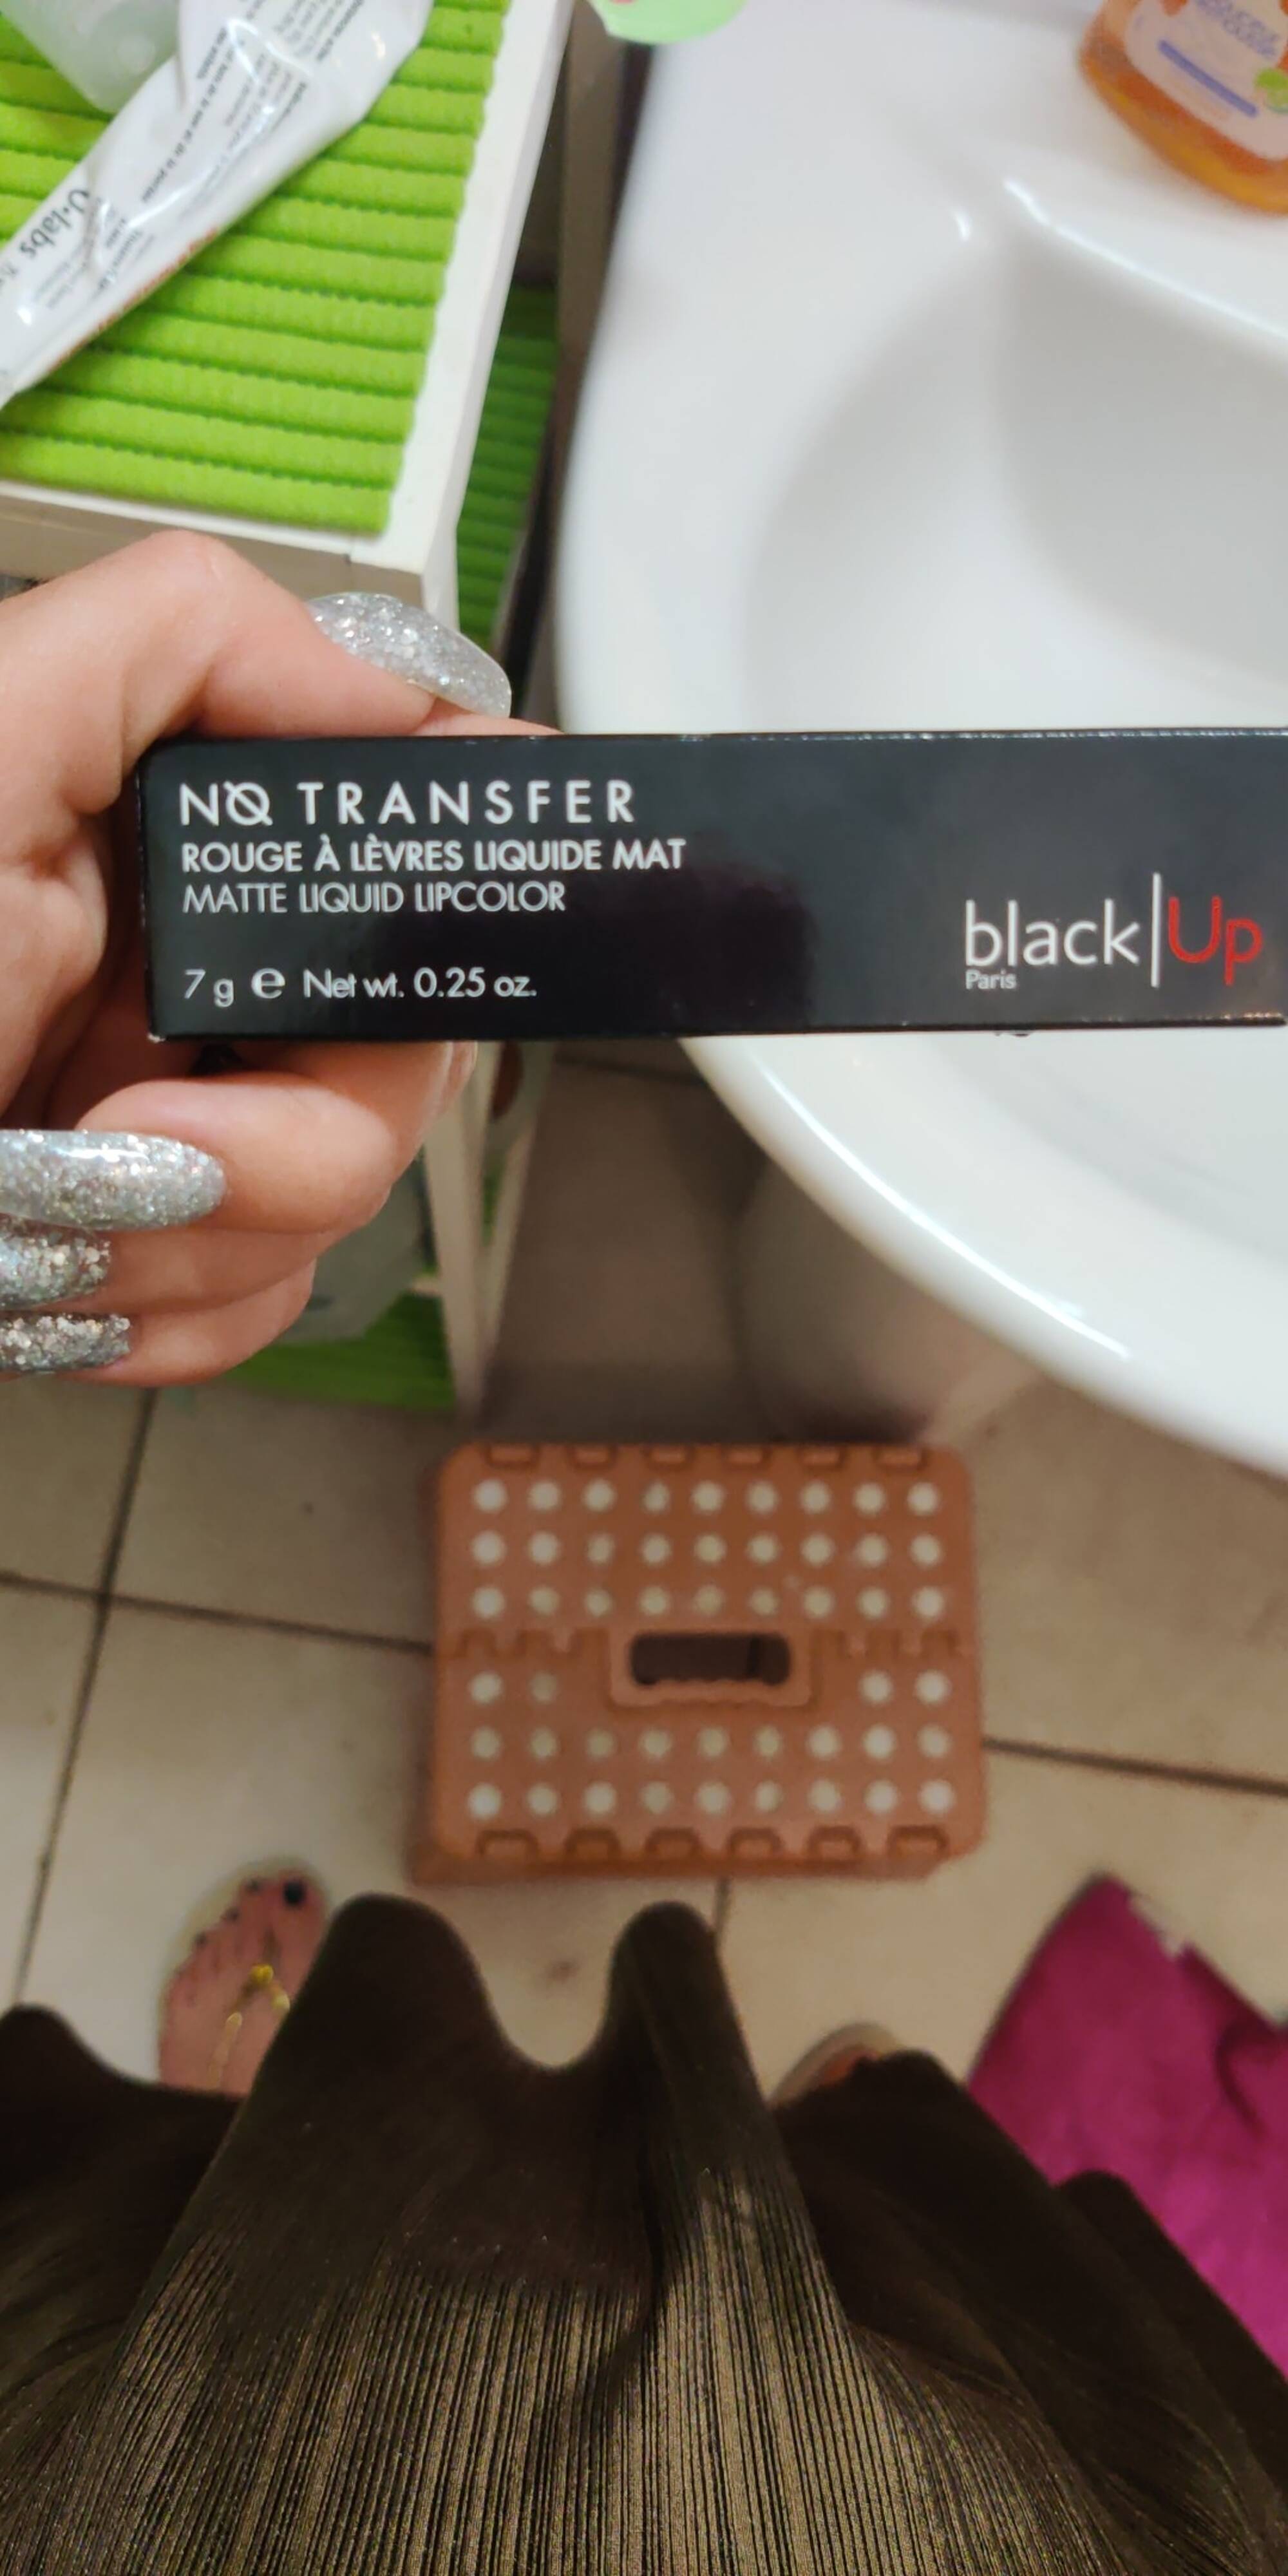 BLACK UP - No transfer - Rouge à lèvres liquide mat